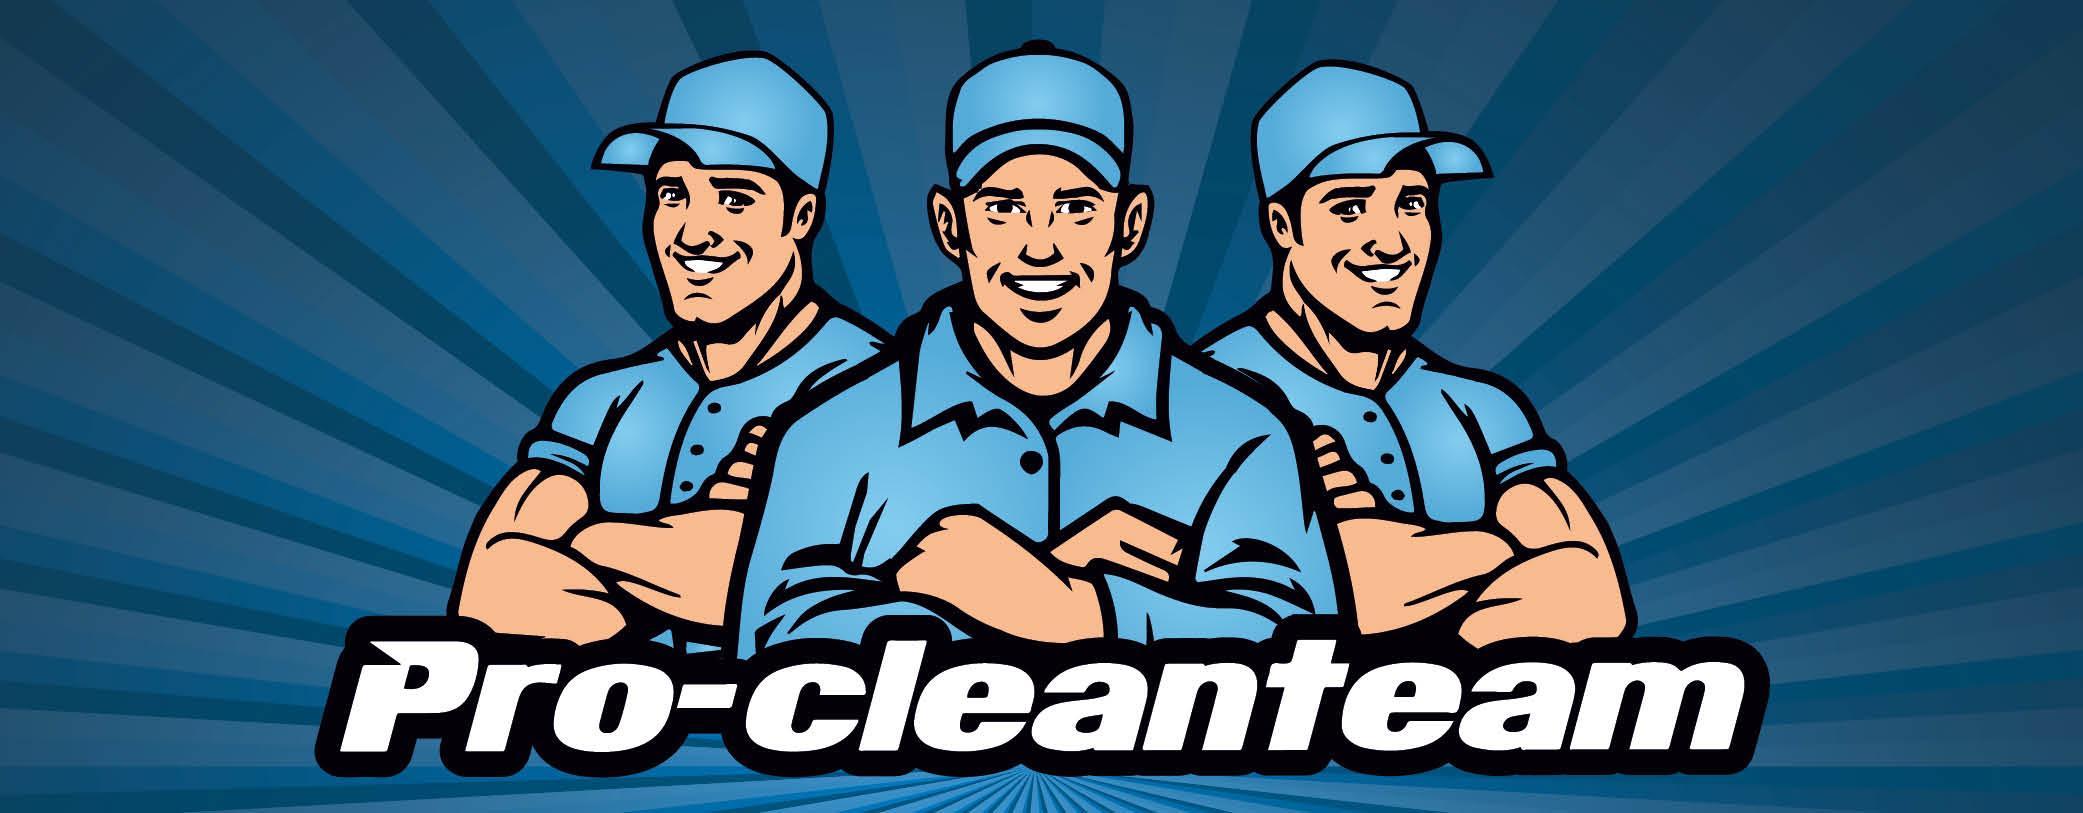 Pro-cleanteam